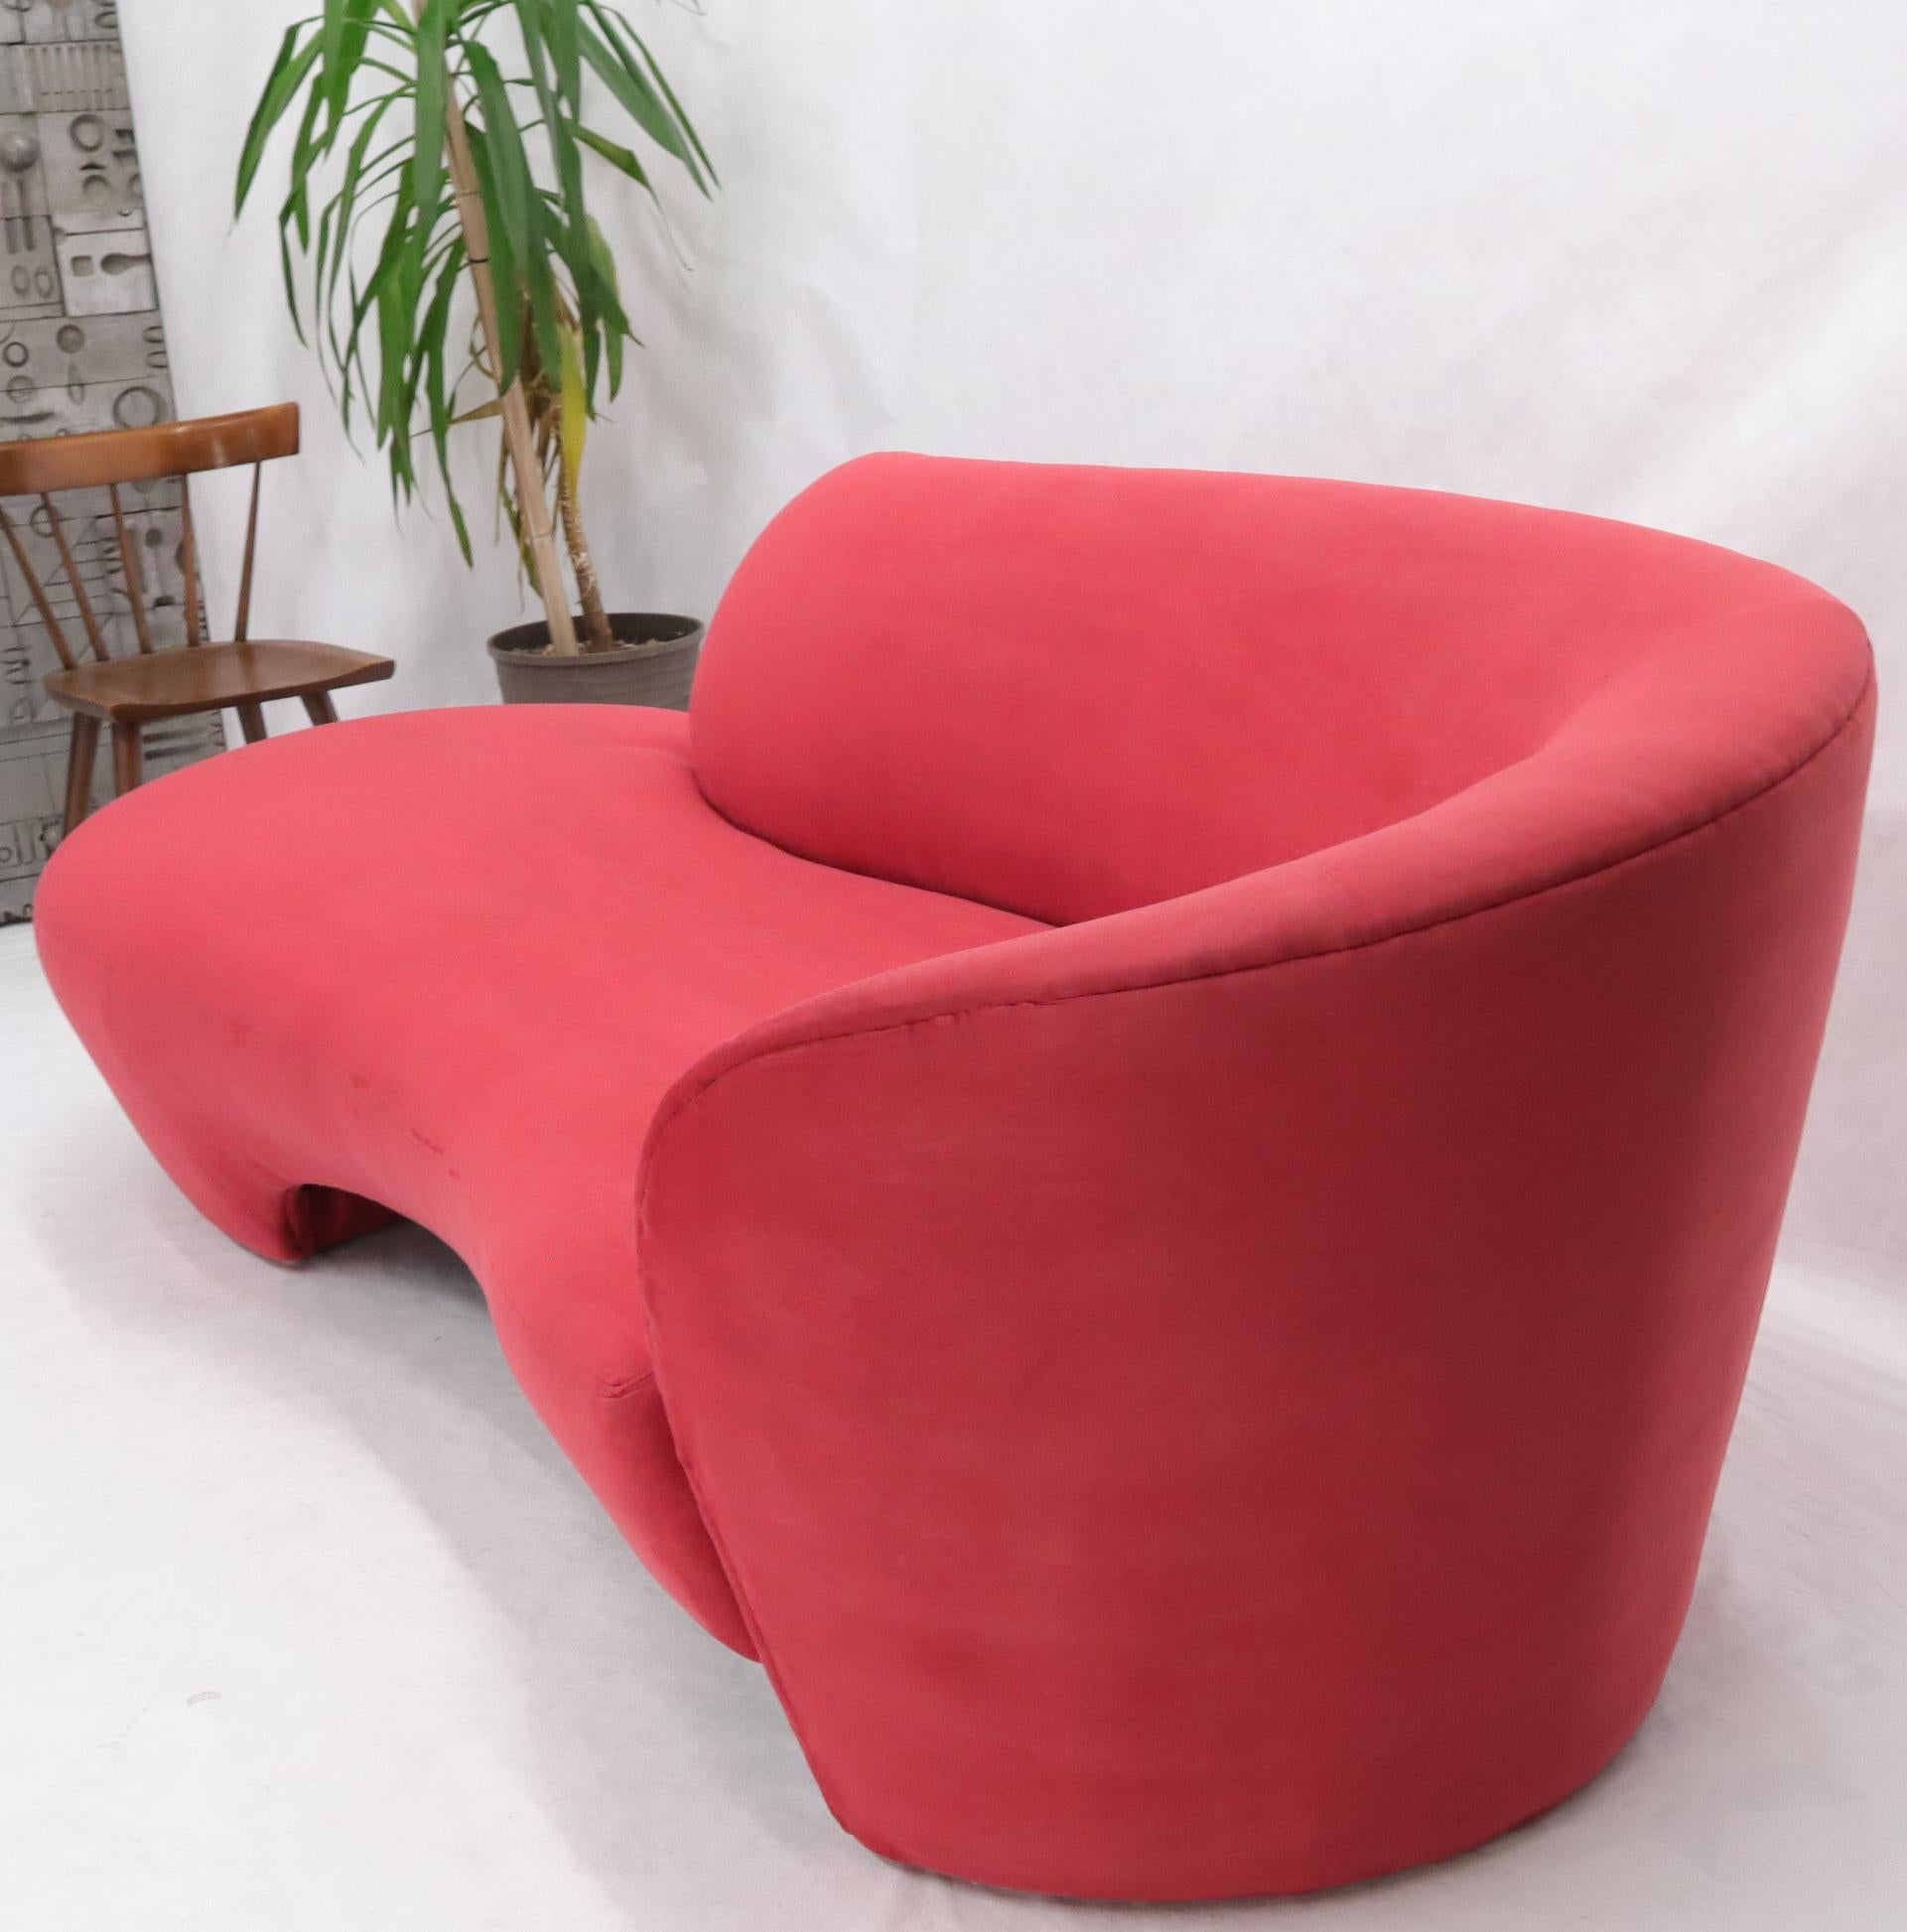 Ultrasuede Fauteuil Weiman préview de chaise longue en daim rouge en vente